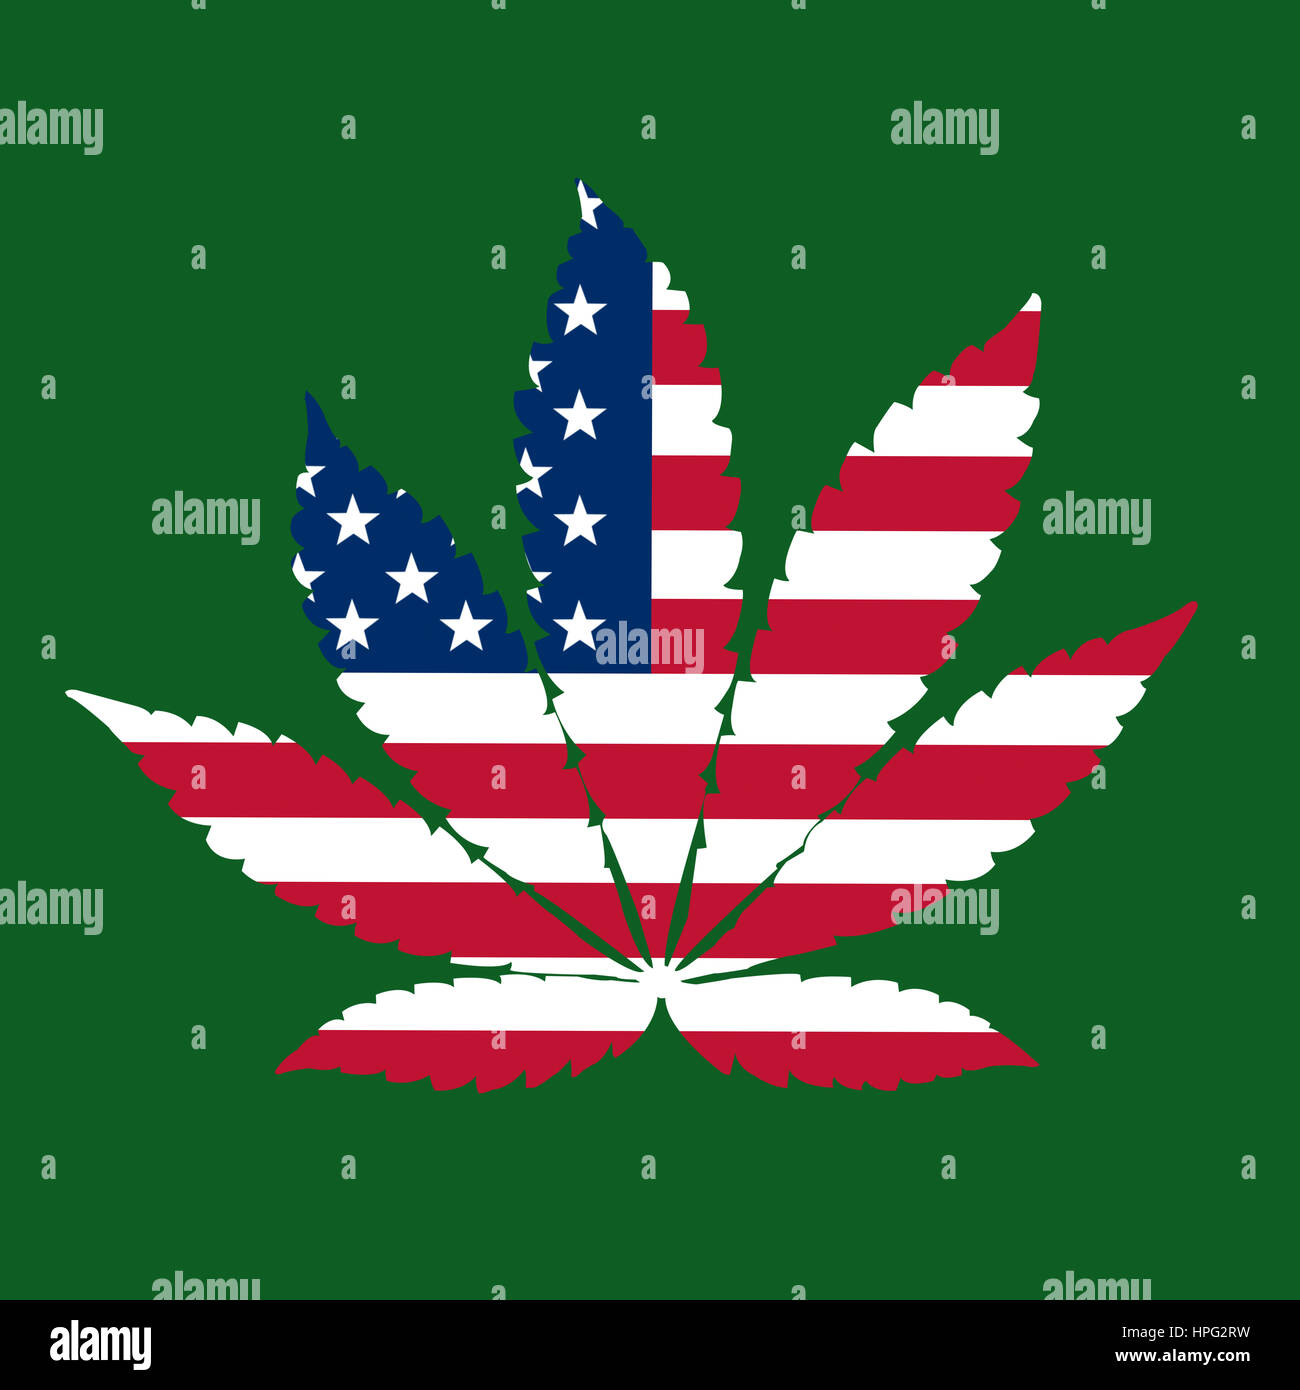 United States flag avec feuilles de marijuana au lieu d'étoiles Banque D'Images